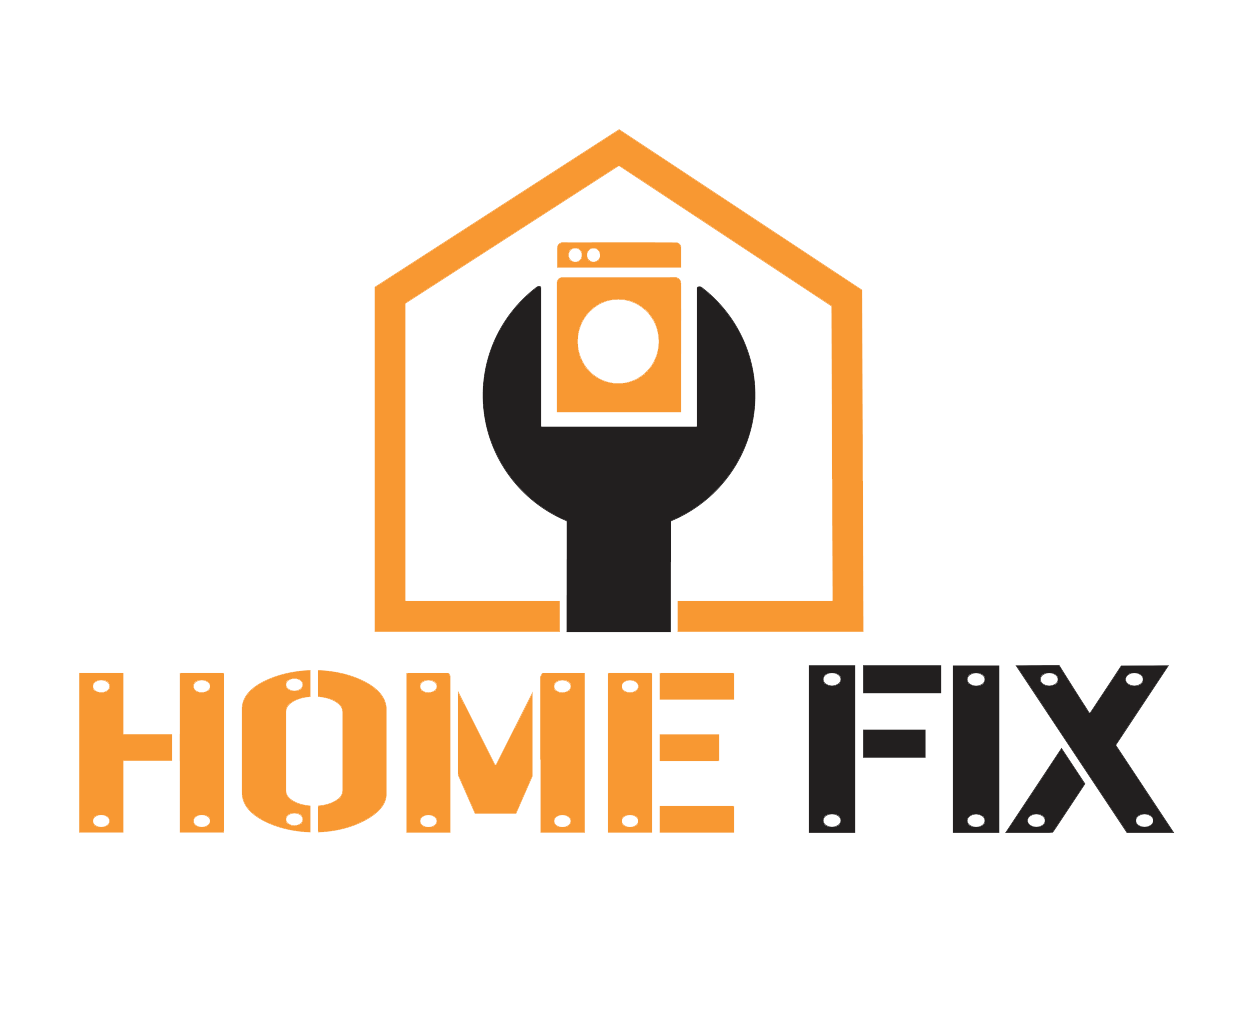 The Home Fix LLC